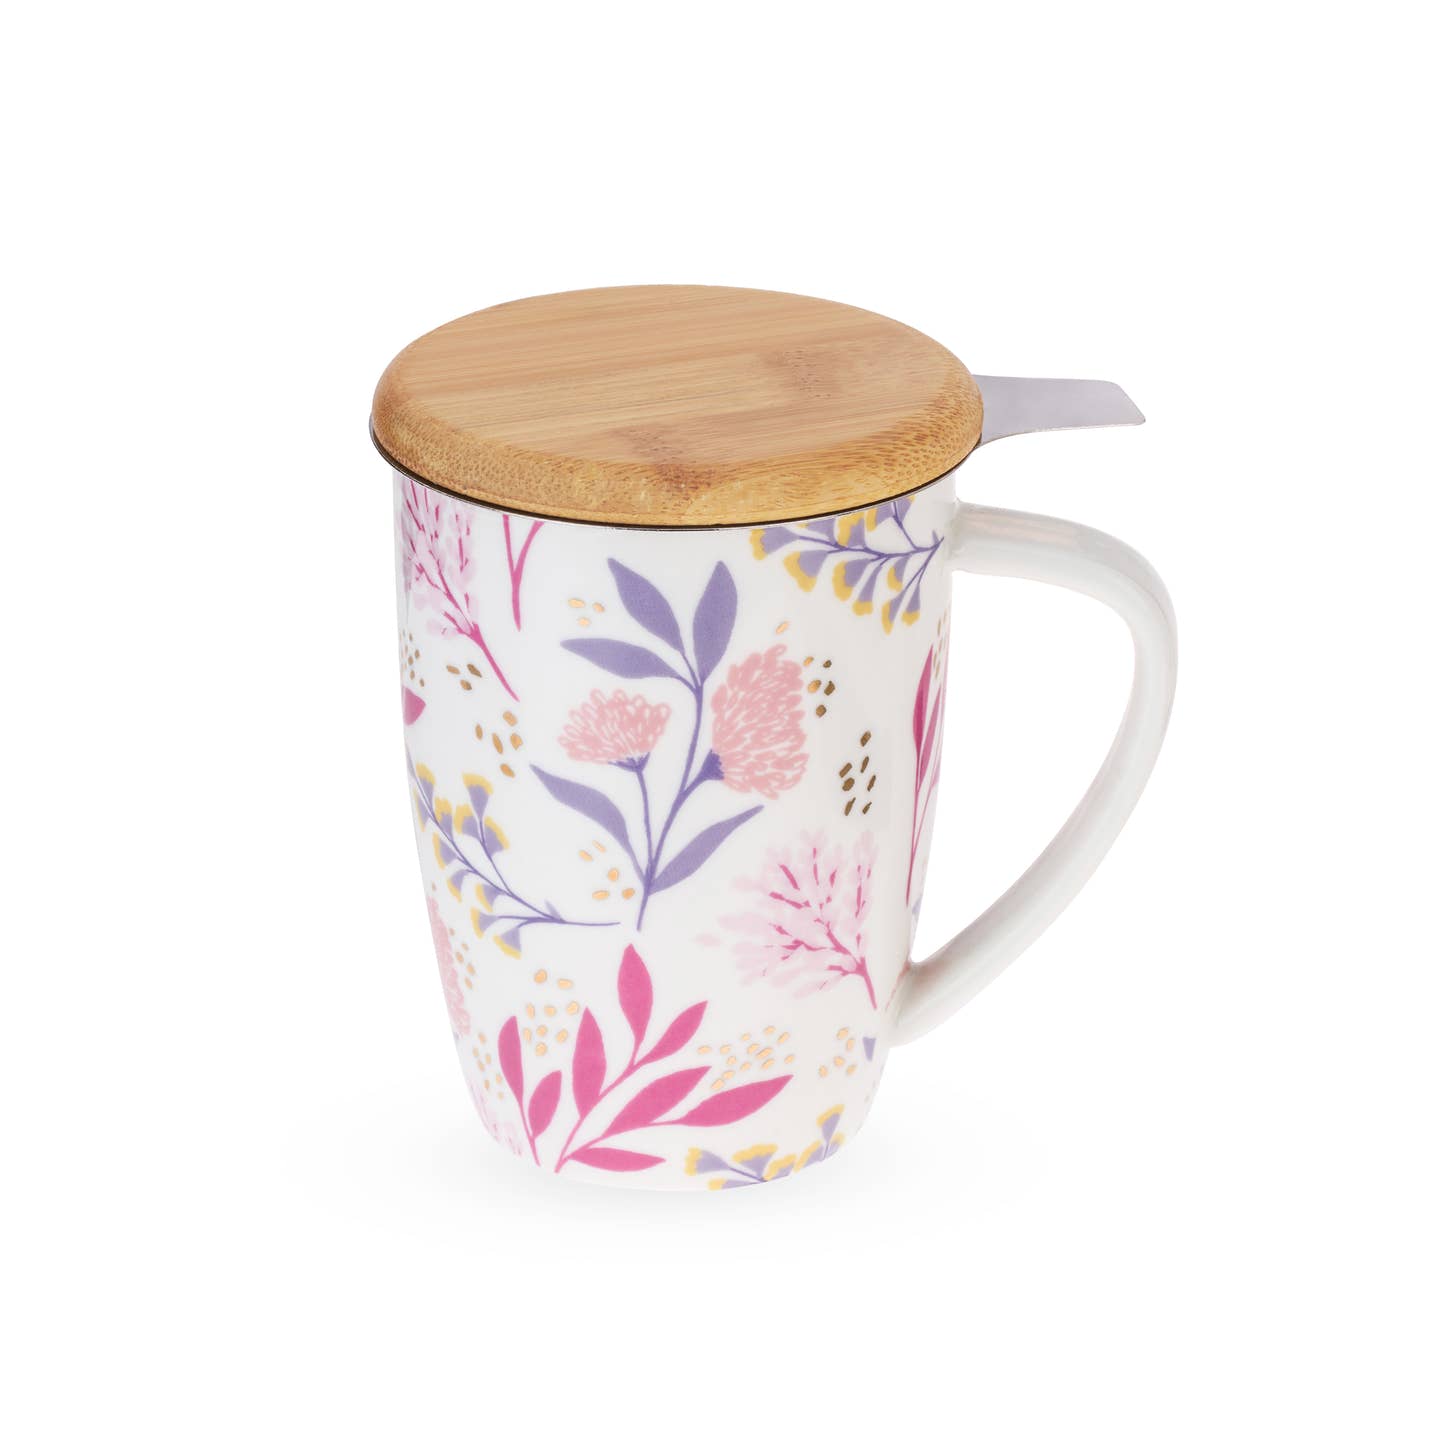 Botanical Tea Mug with Infuser